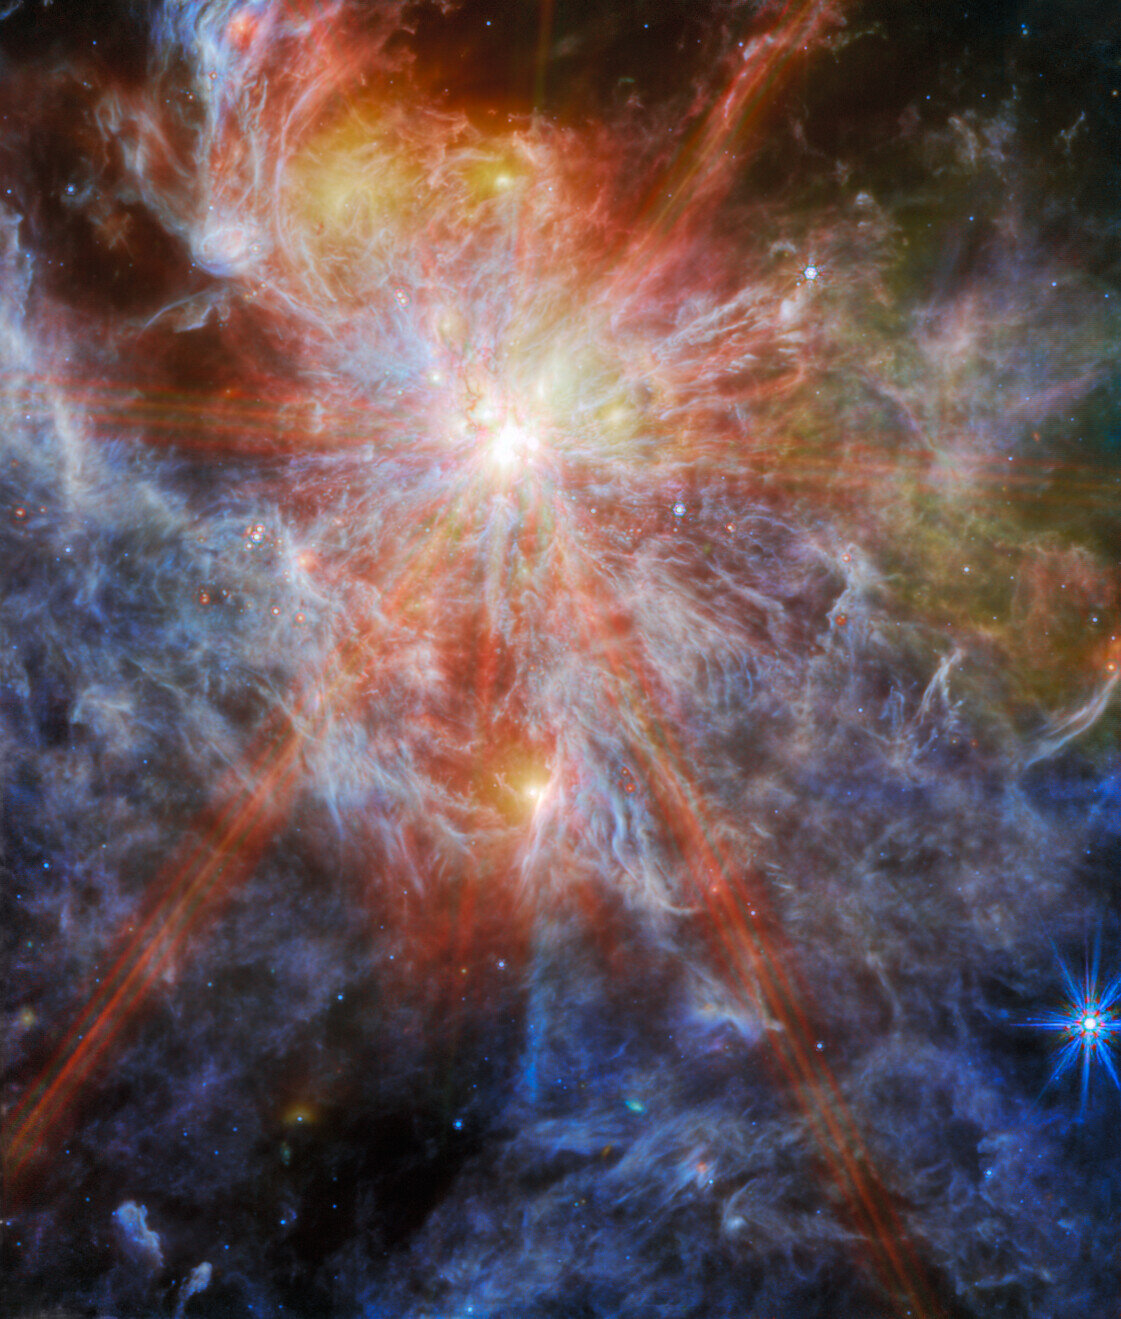 Ova maglina, poznata kao N79, predstavlja područje međuzvjezdanog atomskog vodika koje je ionizirano. Zasluge: Webb - NASA.